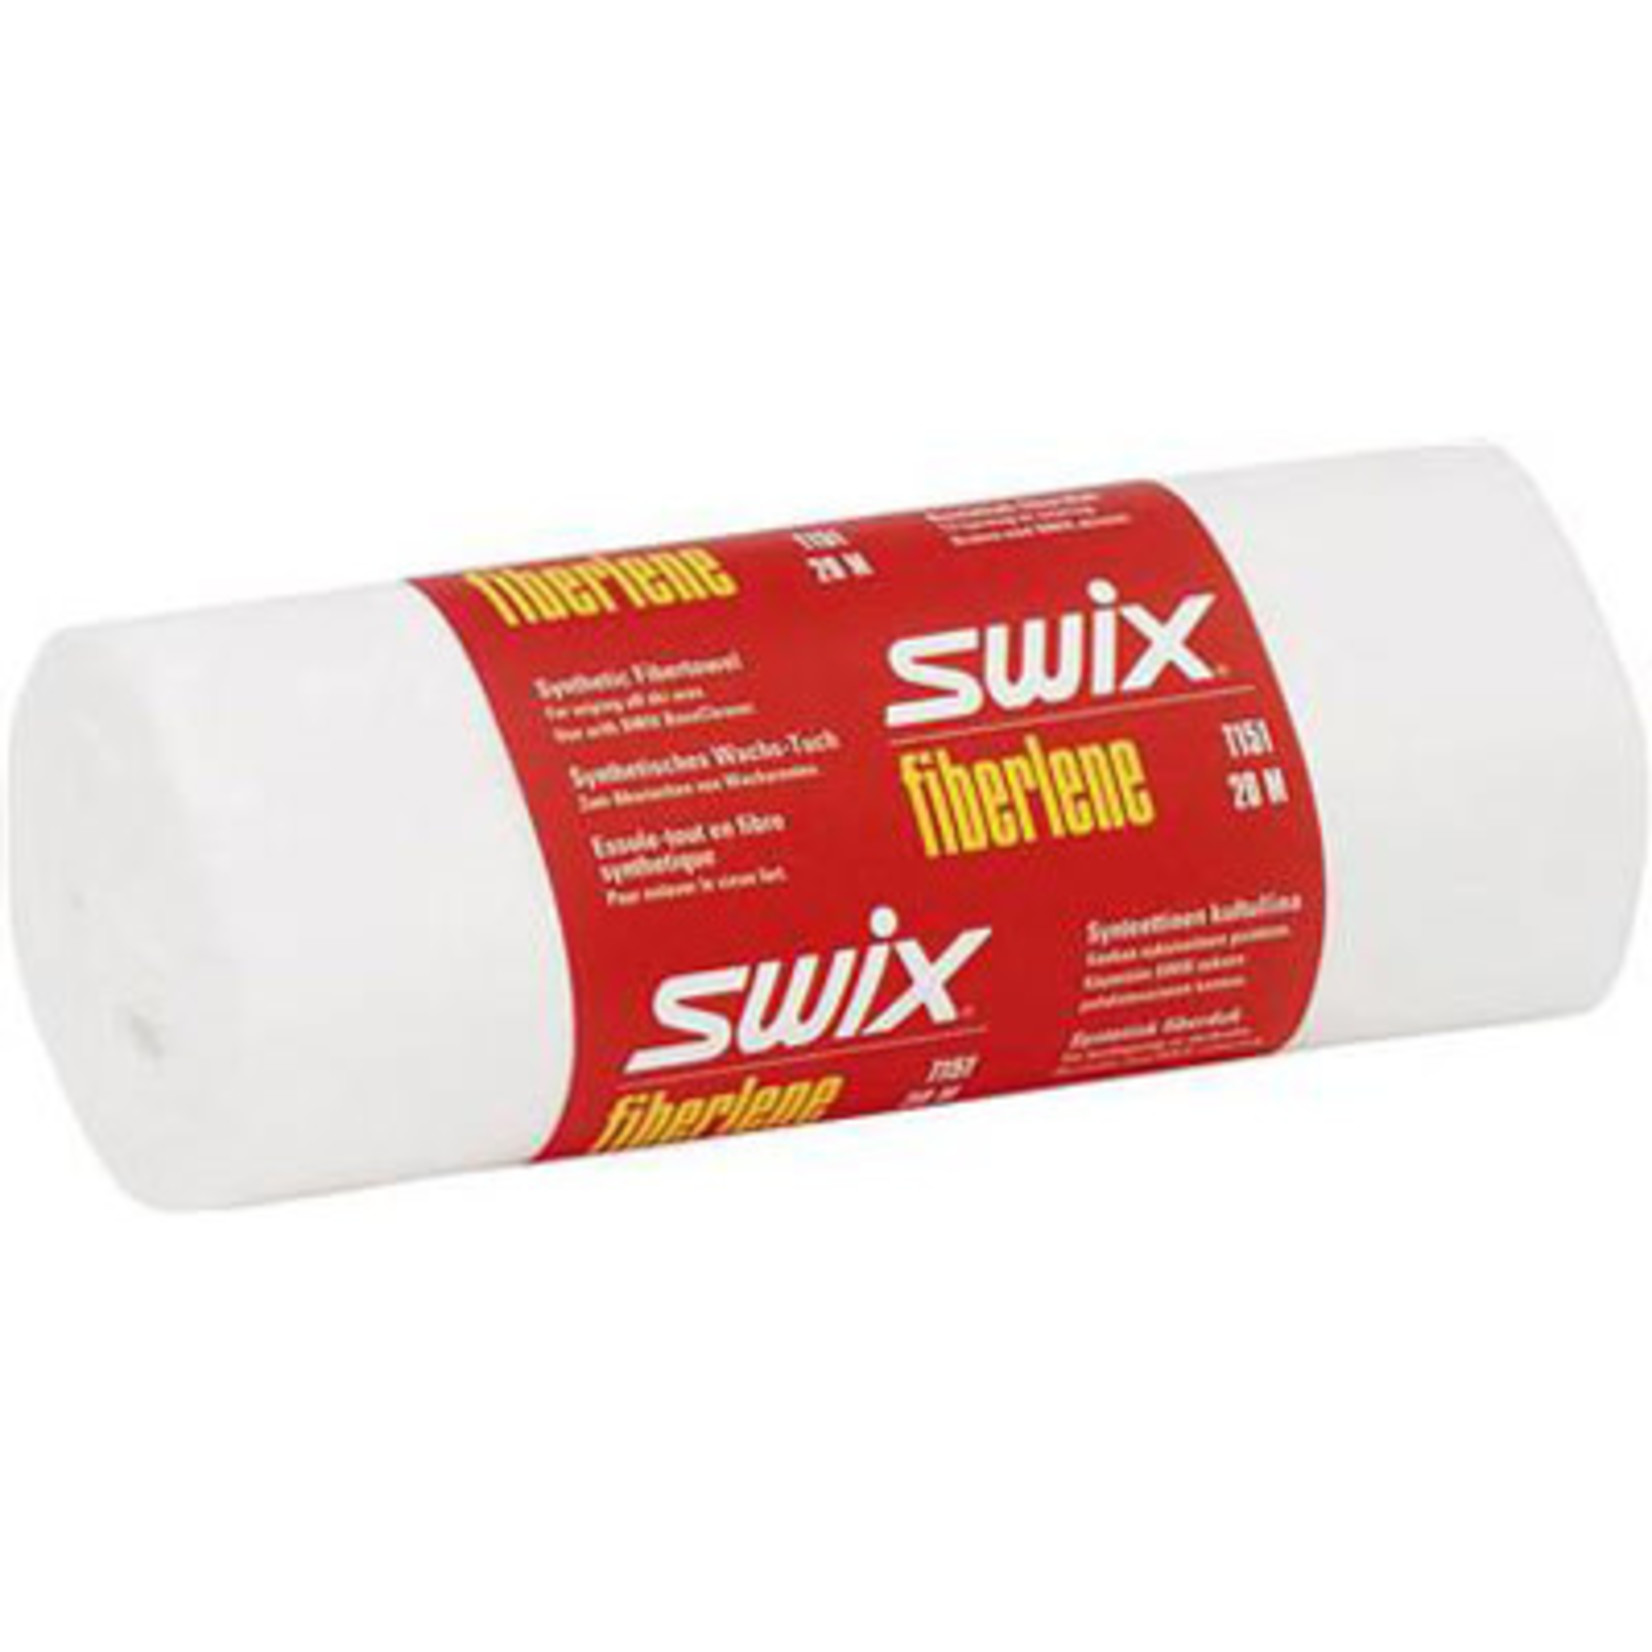 SWIX Swix Fiberline 20m T151